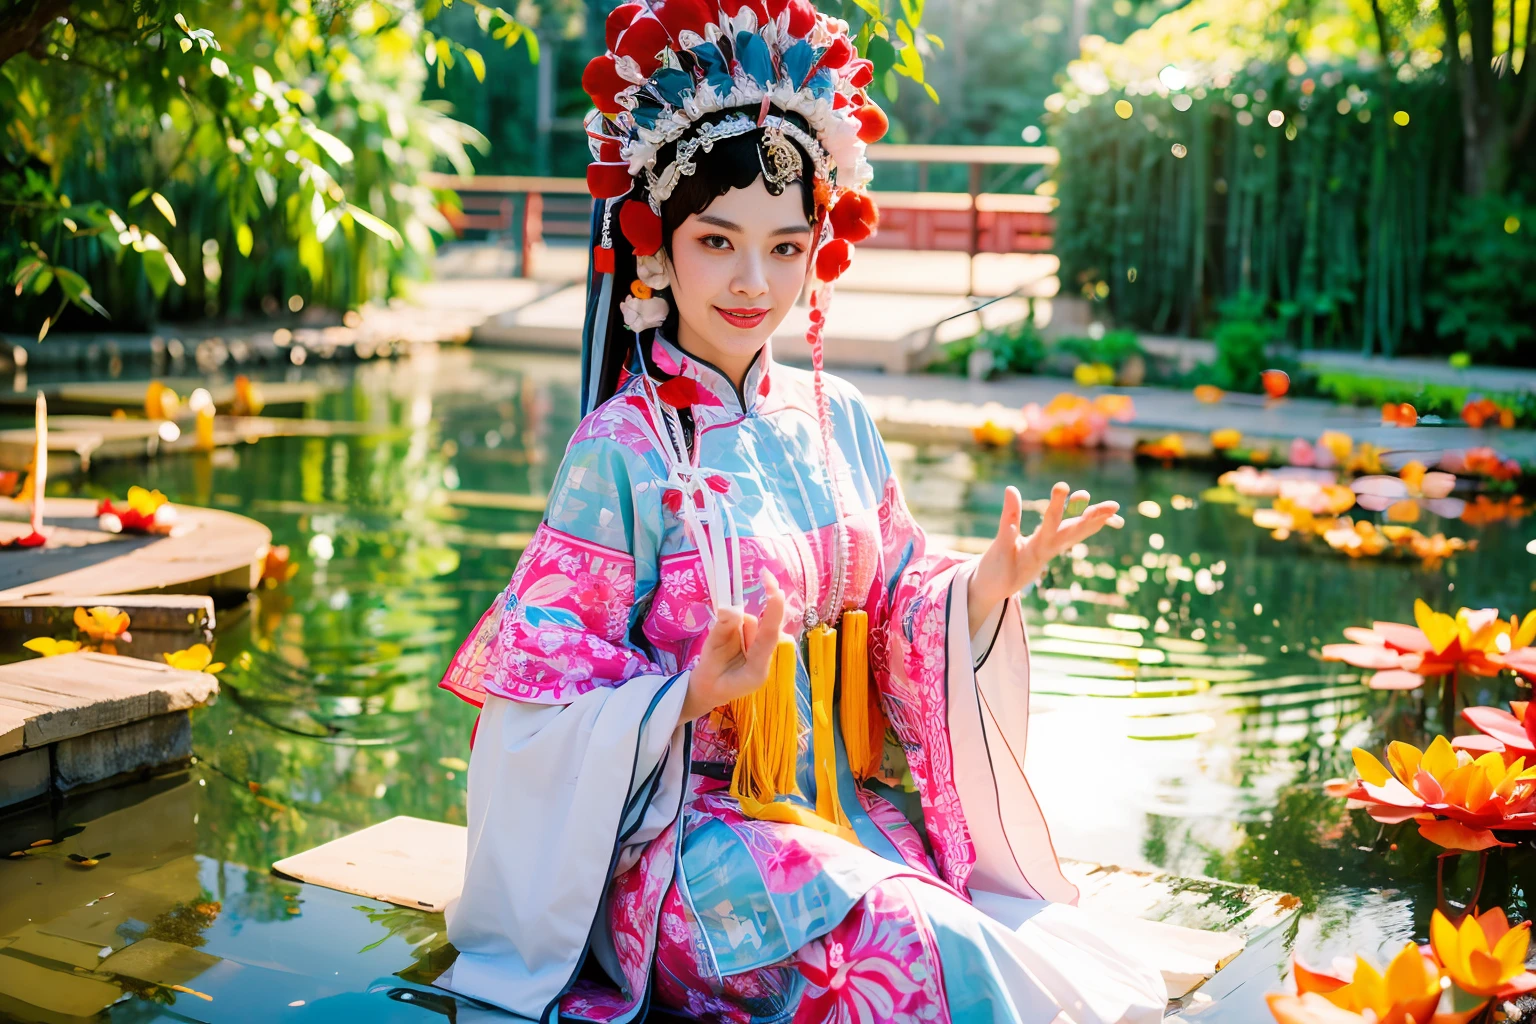 De cerca, Una belleza vestida con un traje chino de la Ópera de Pekín flotando en un estanque de lotos, 16k, mejor calidad, bokeh, luz tenue, espacio, claro como el cristal, luz natural, niebla blanca, hojas de loto en el estanque, Súper detalle